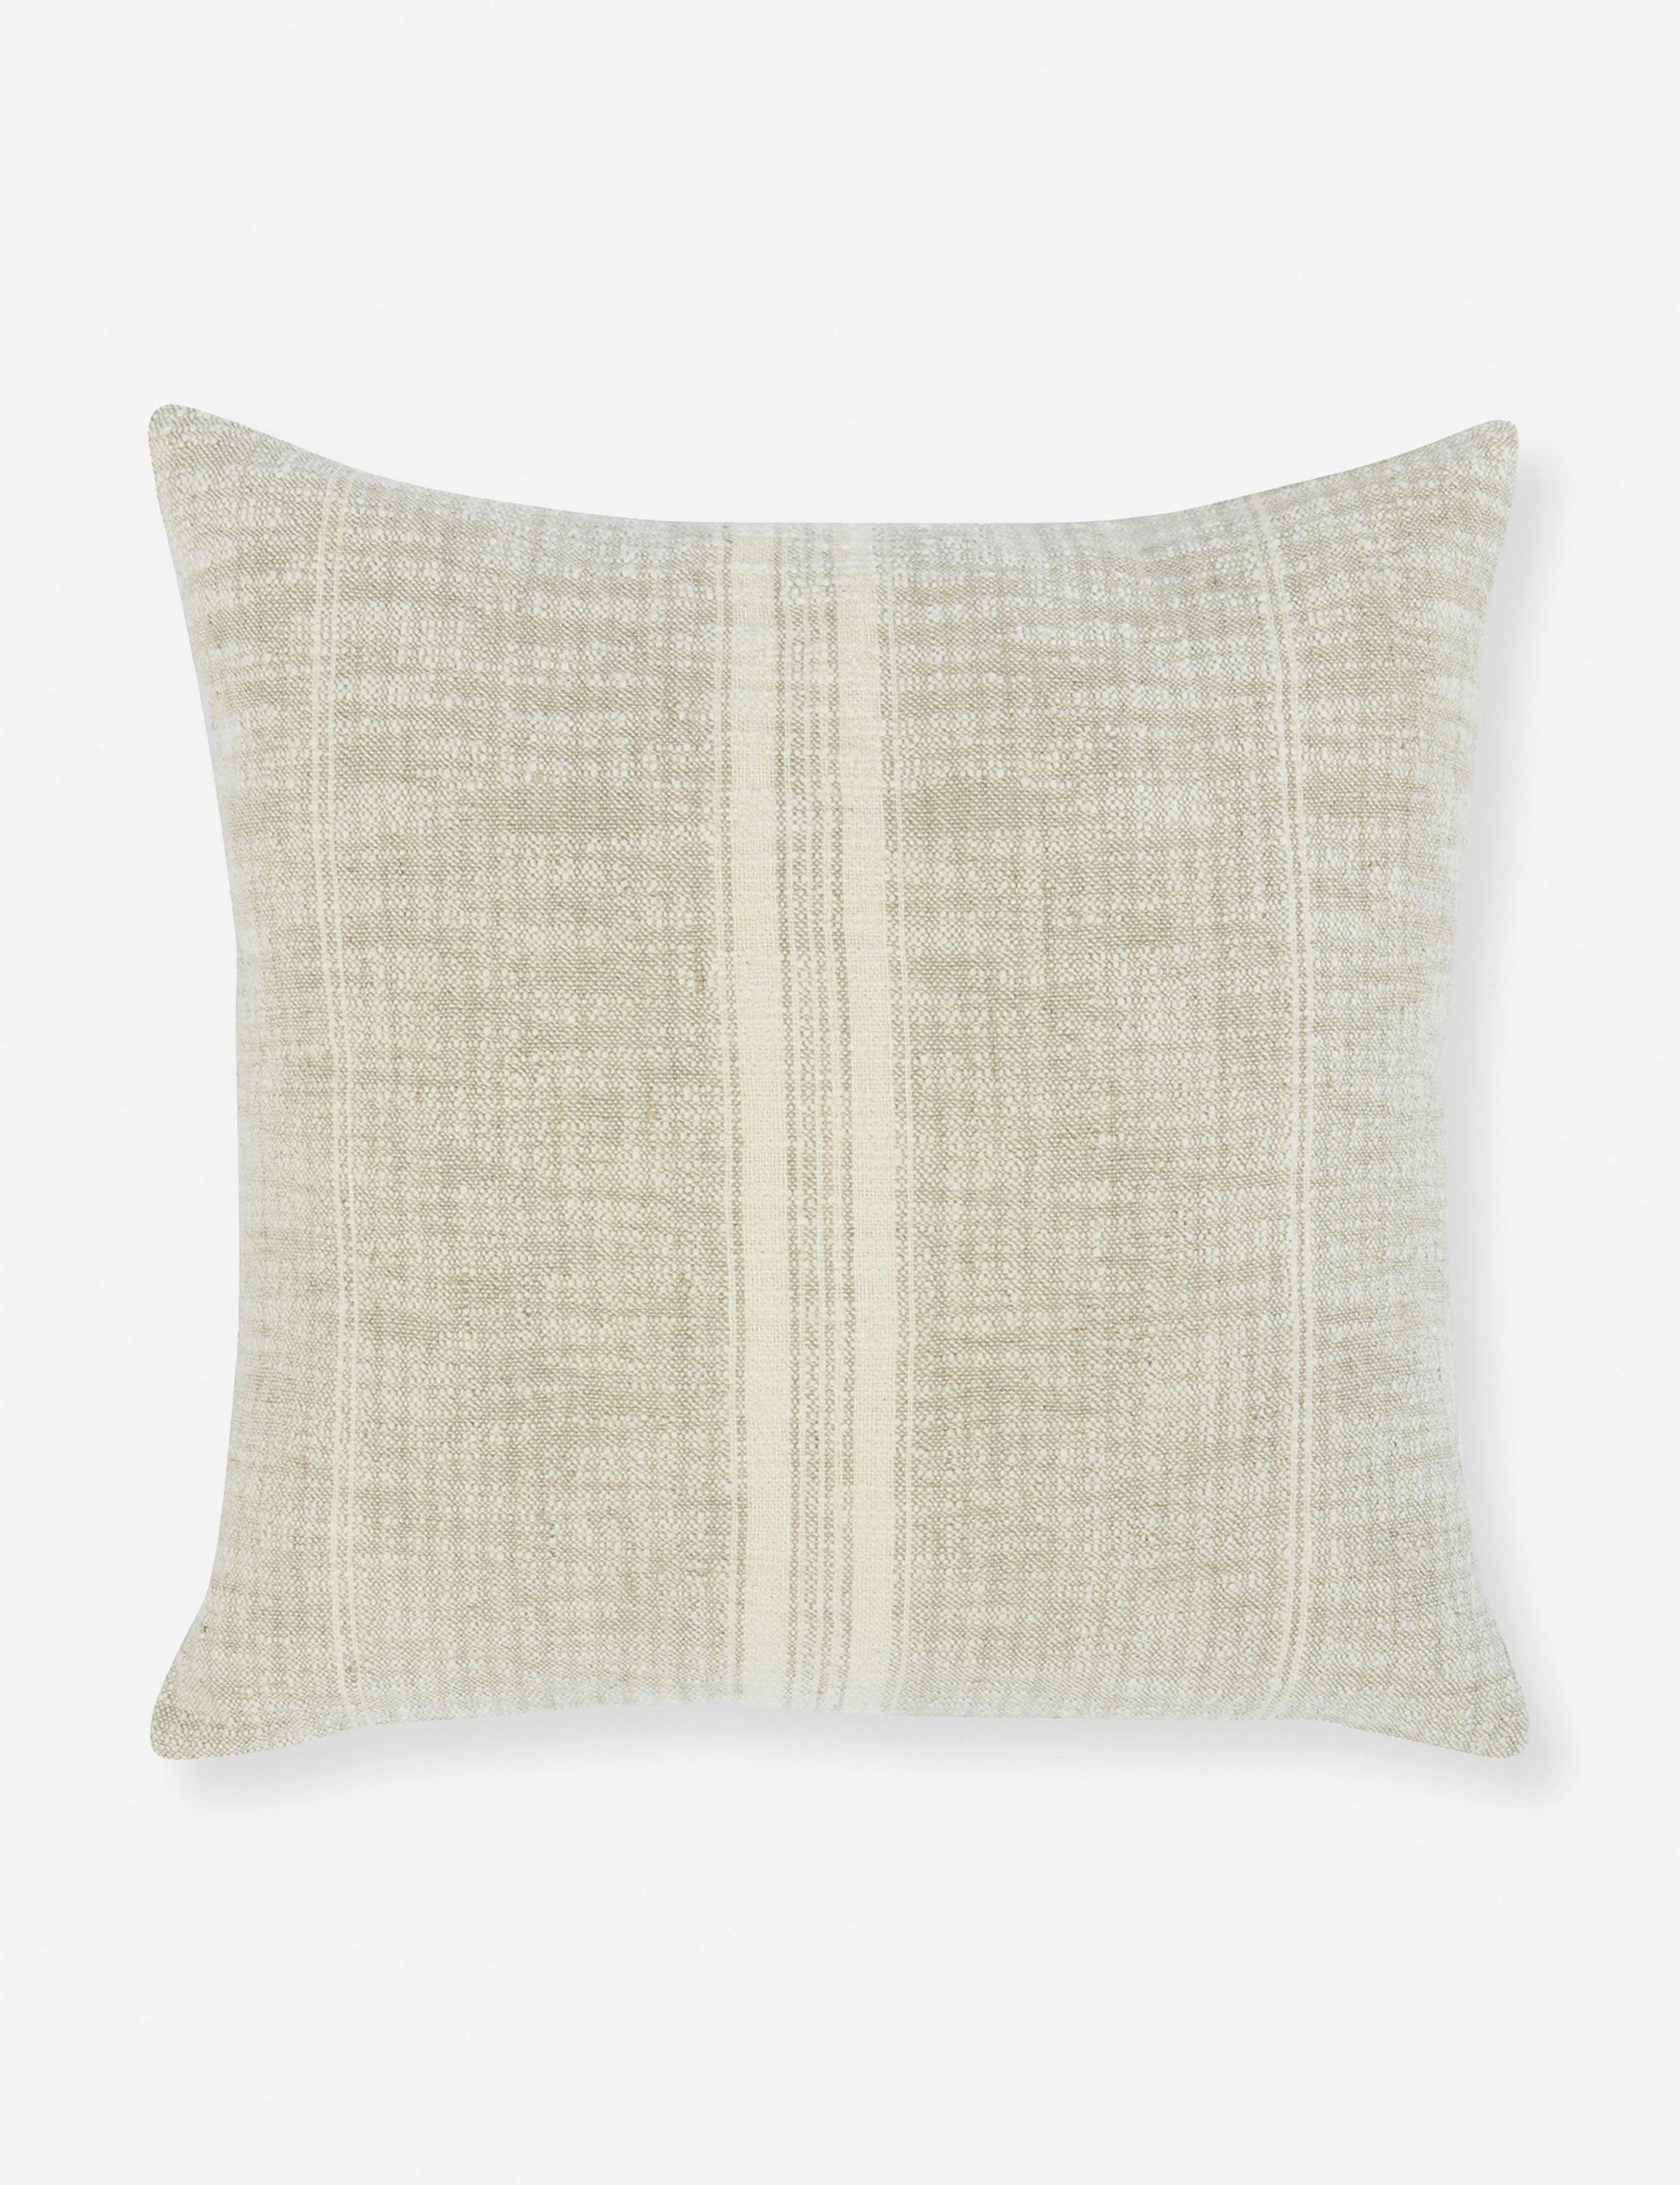 Tia Natural Ivory Woven Stripe 22" Square Throw Pillow